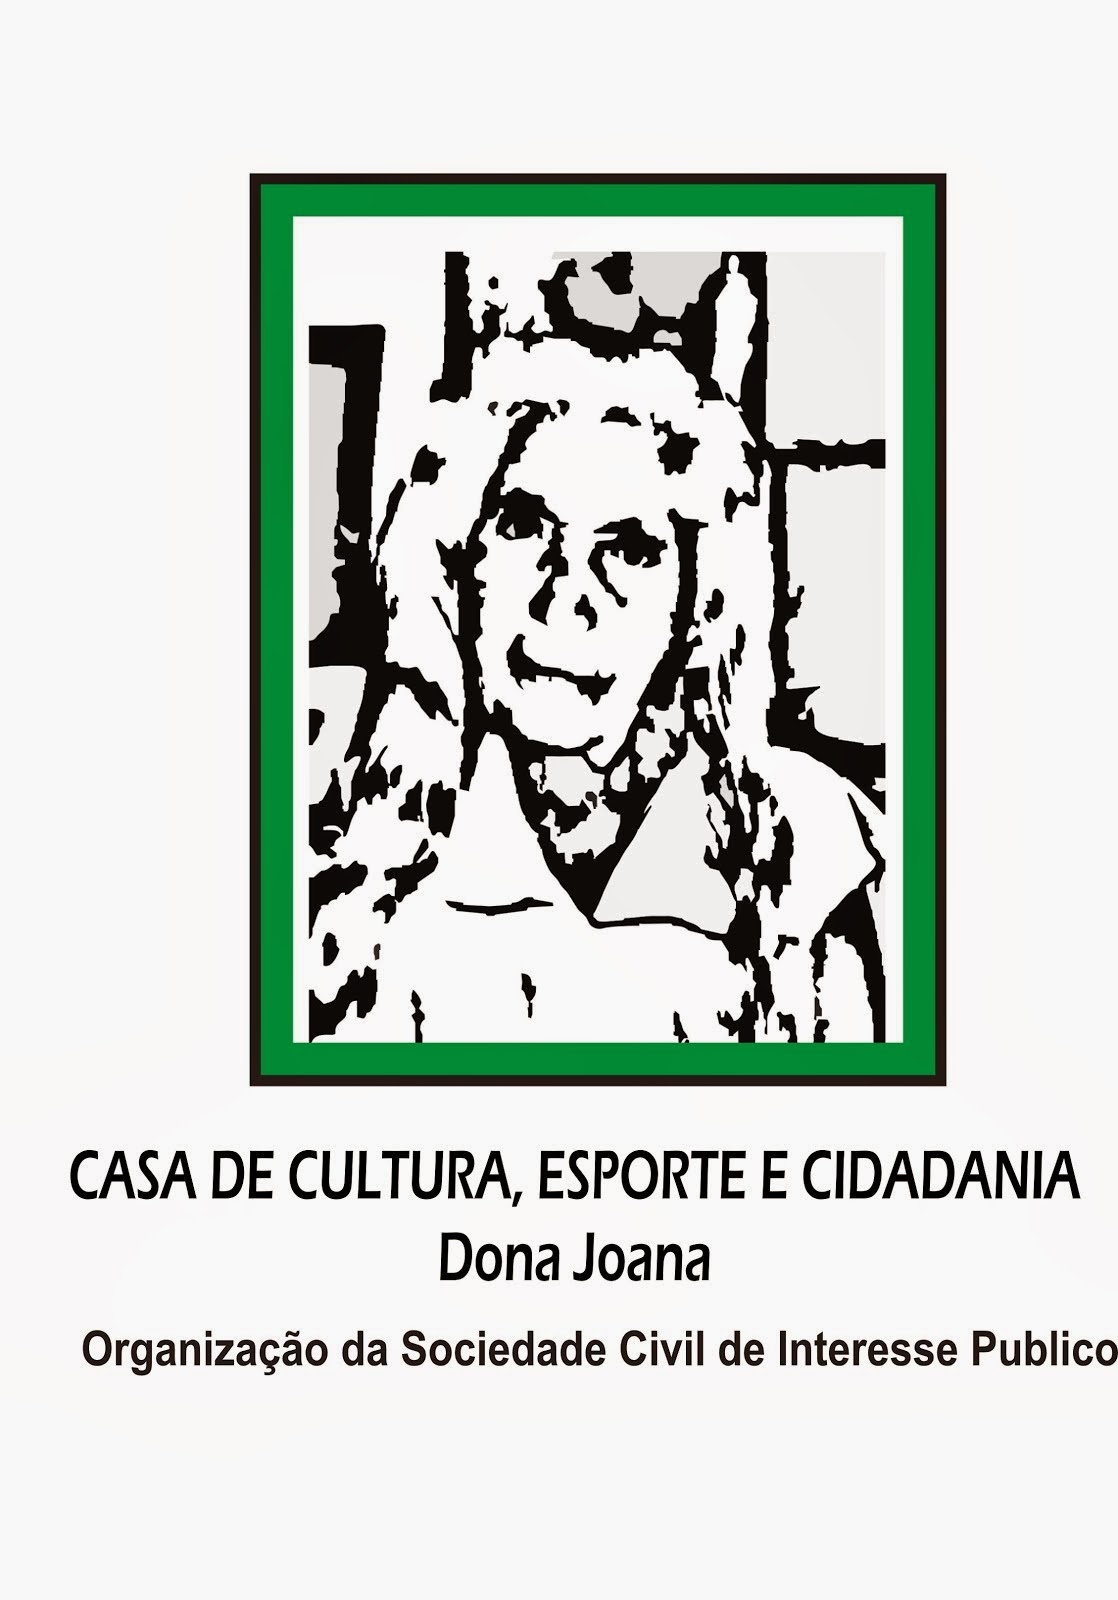 CASA DE CULTURA DONA JOANA